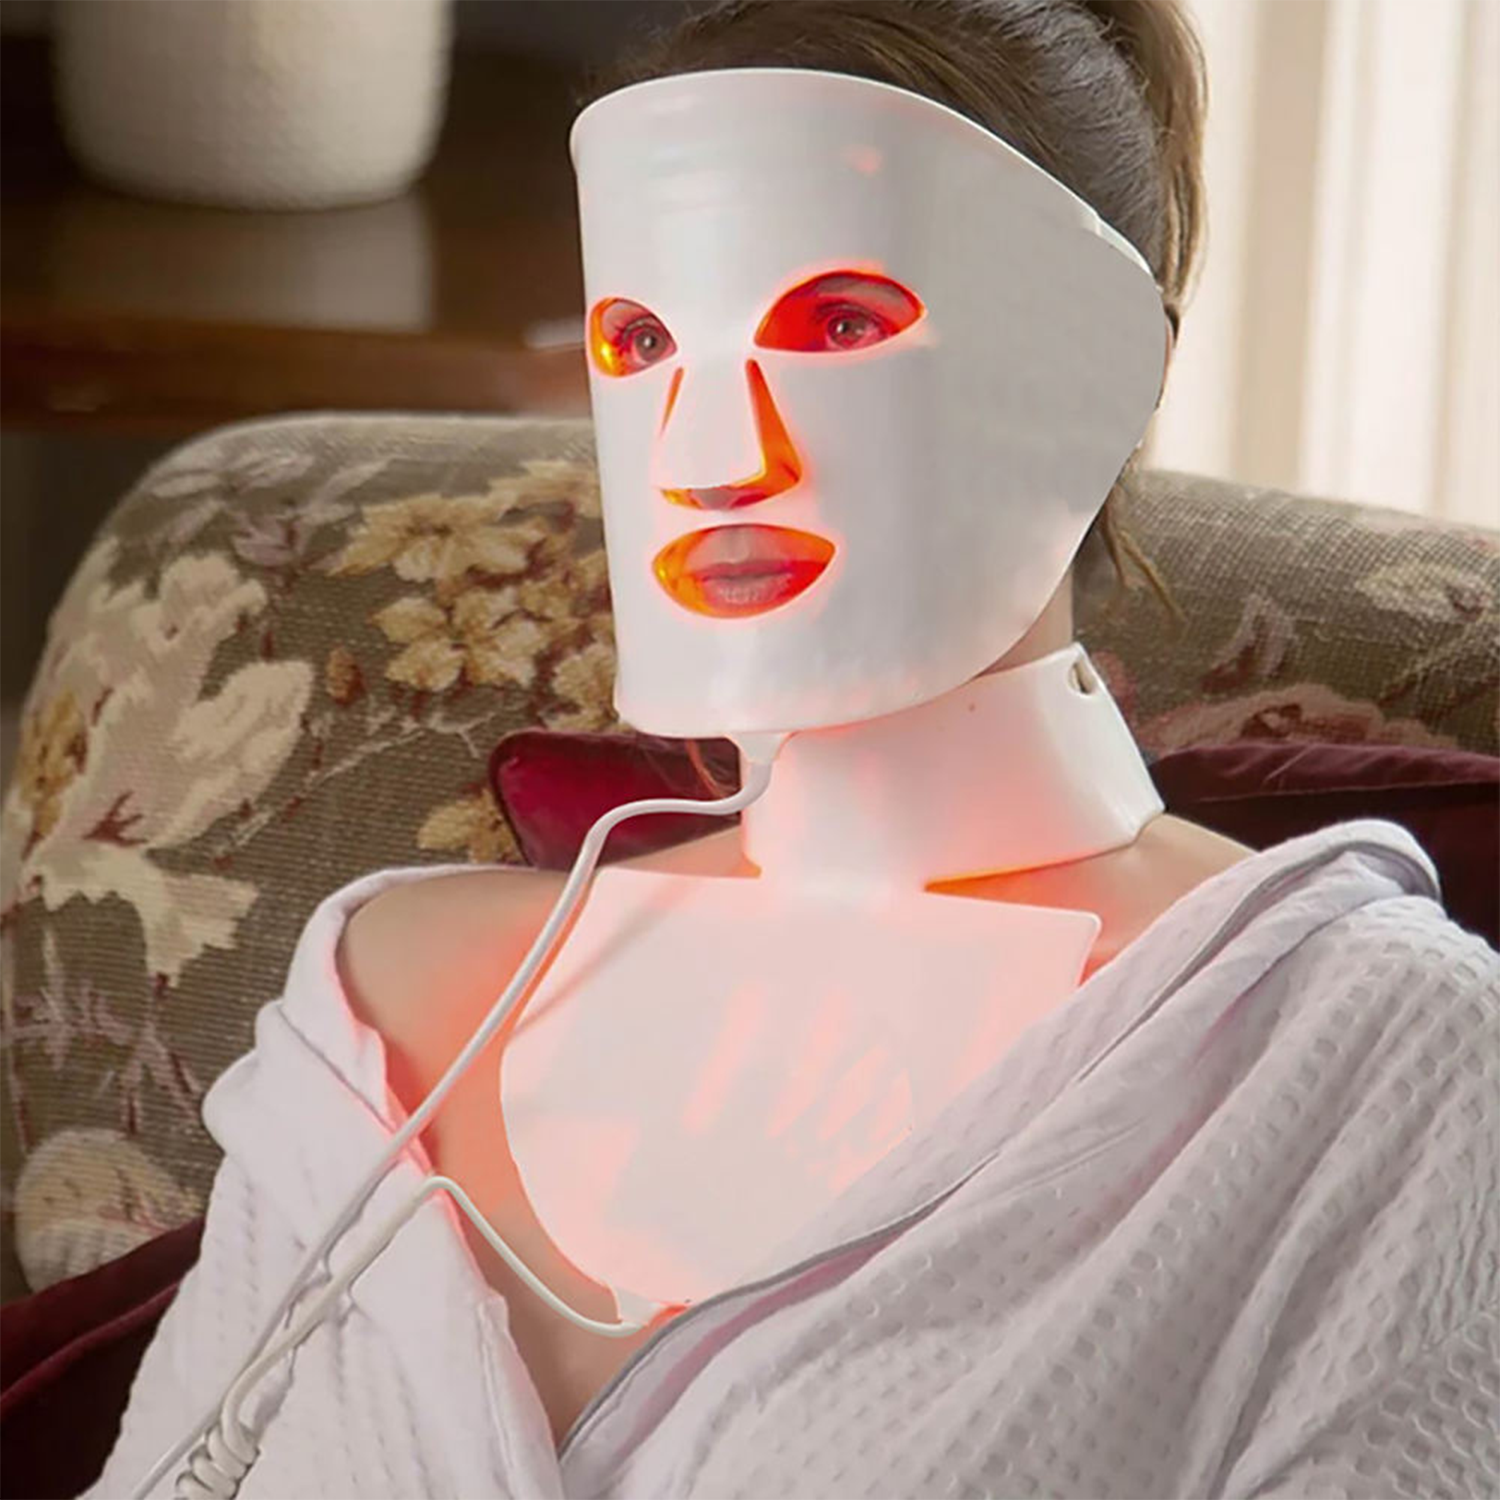 maska LED na twarz i szyję